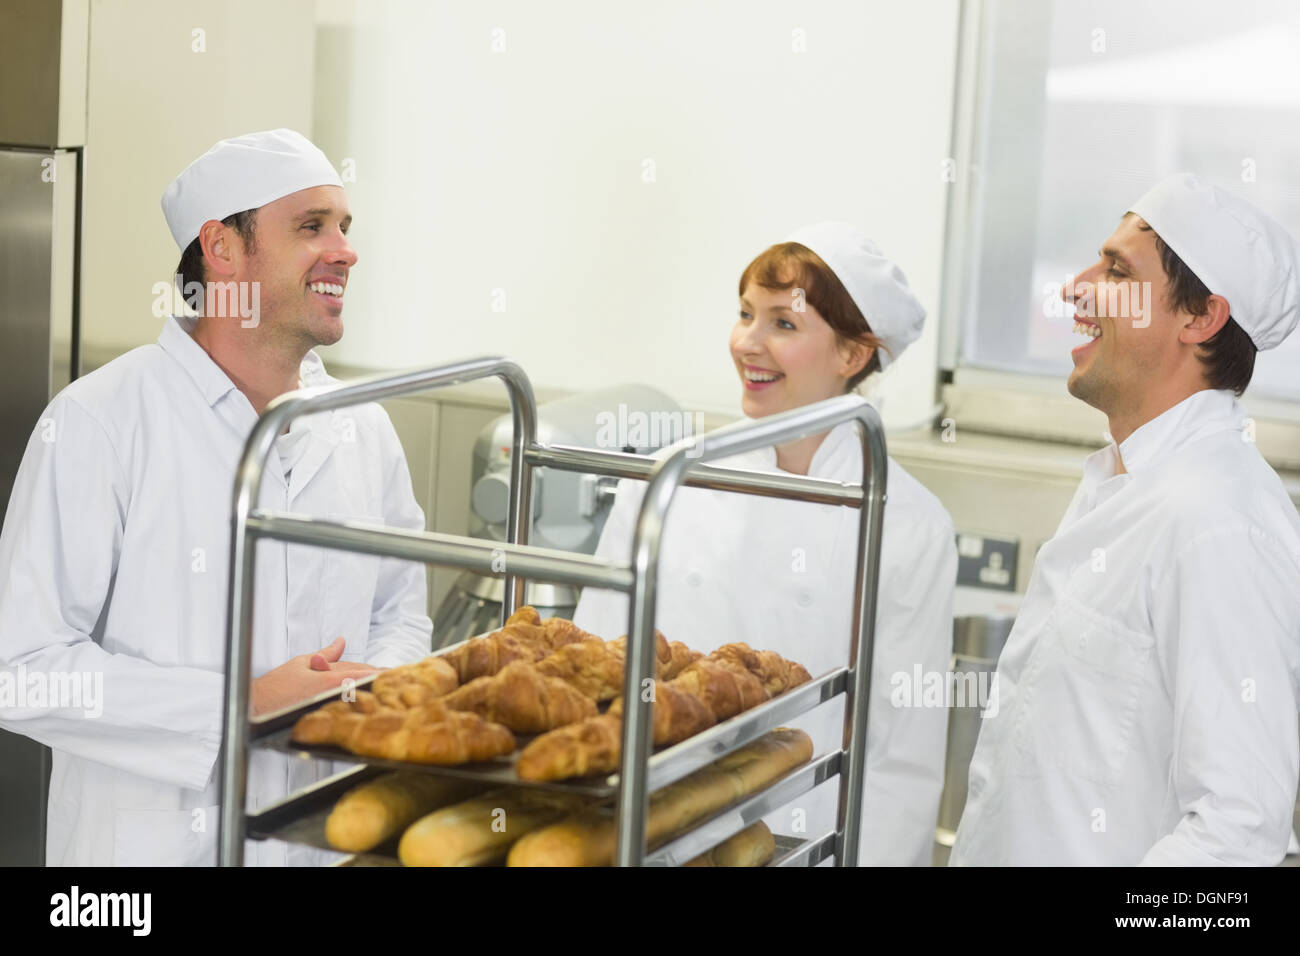 Trois jeunes boulangers chat debout dans une cuisine Banque D'Images